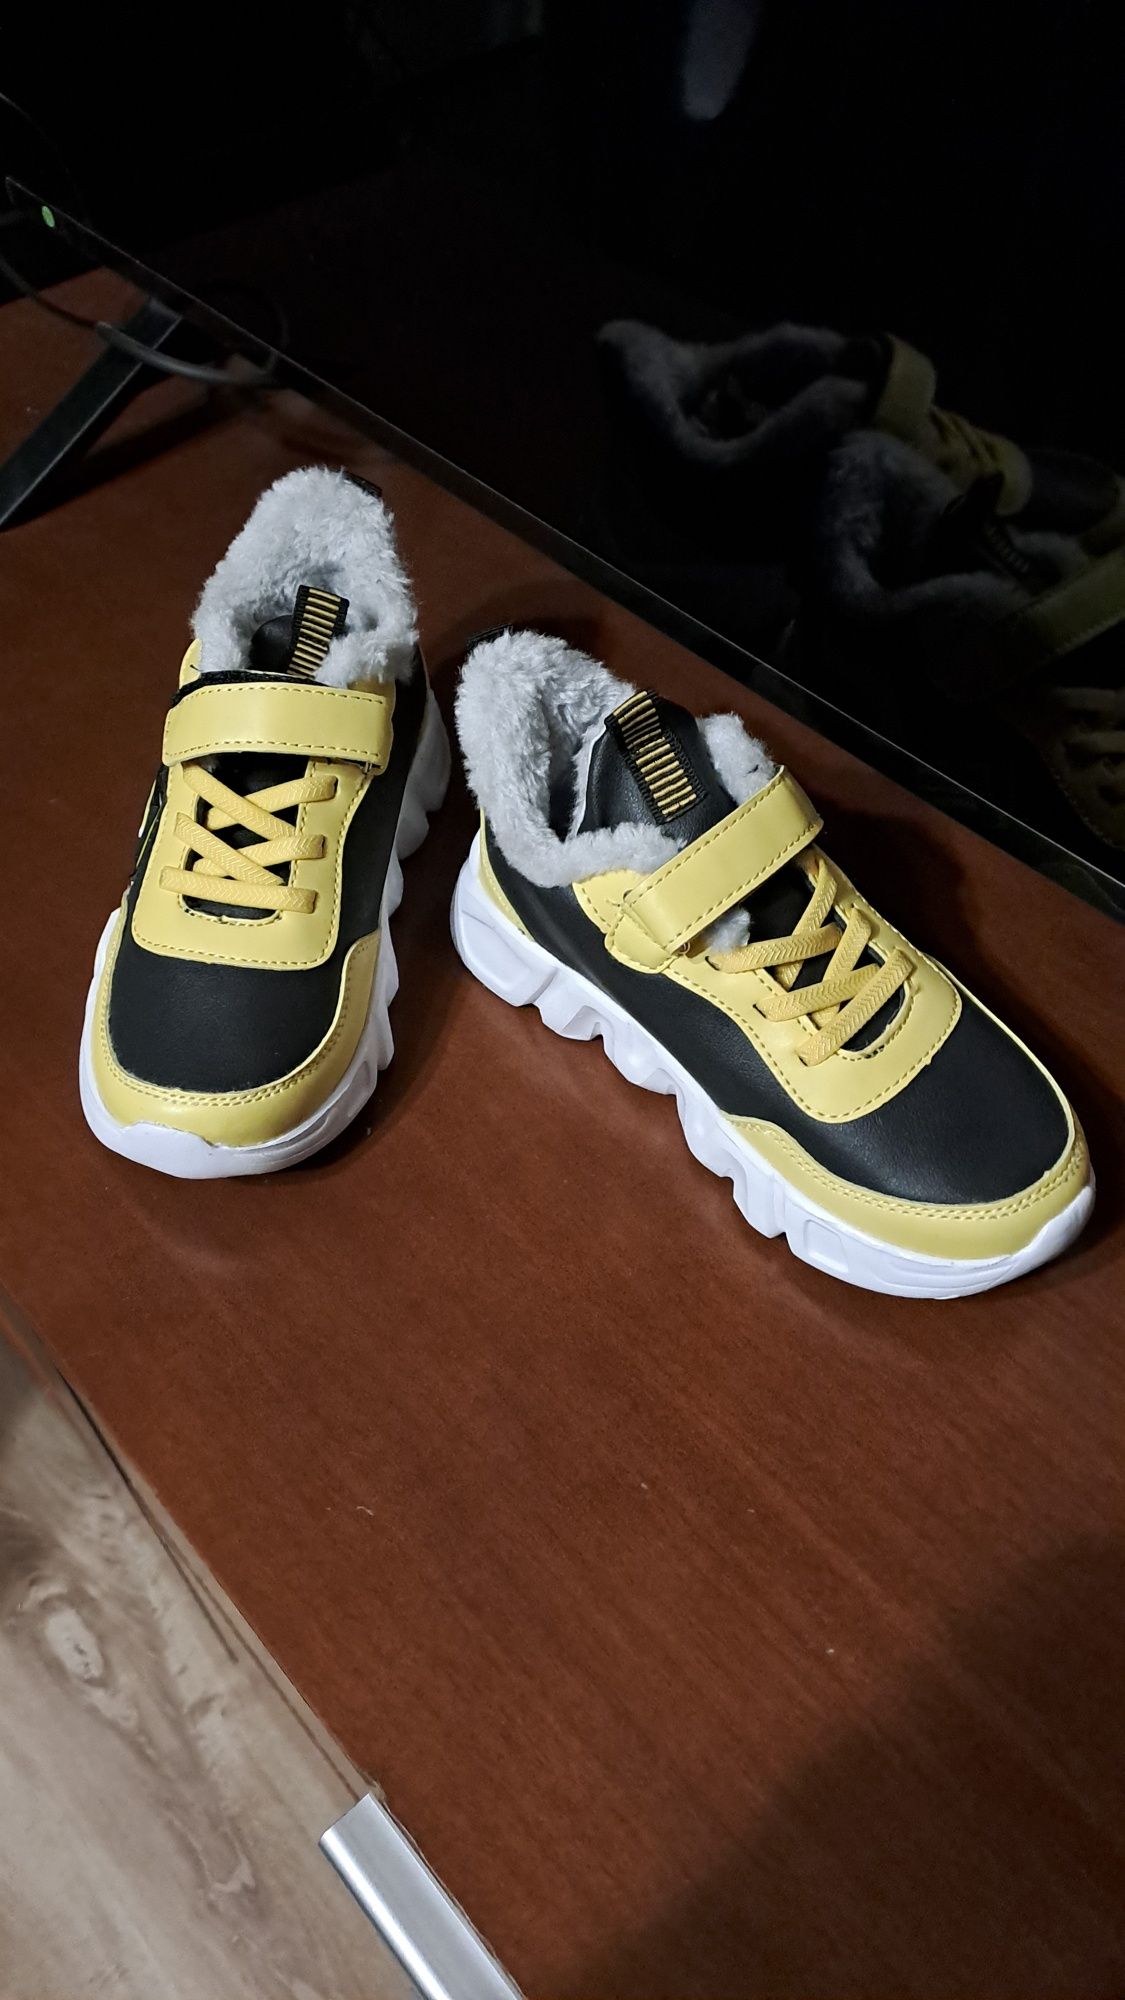 Pikachu buty nowe fashion r. 30 pokemon